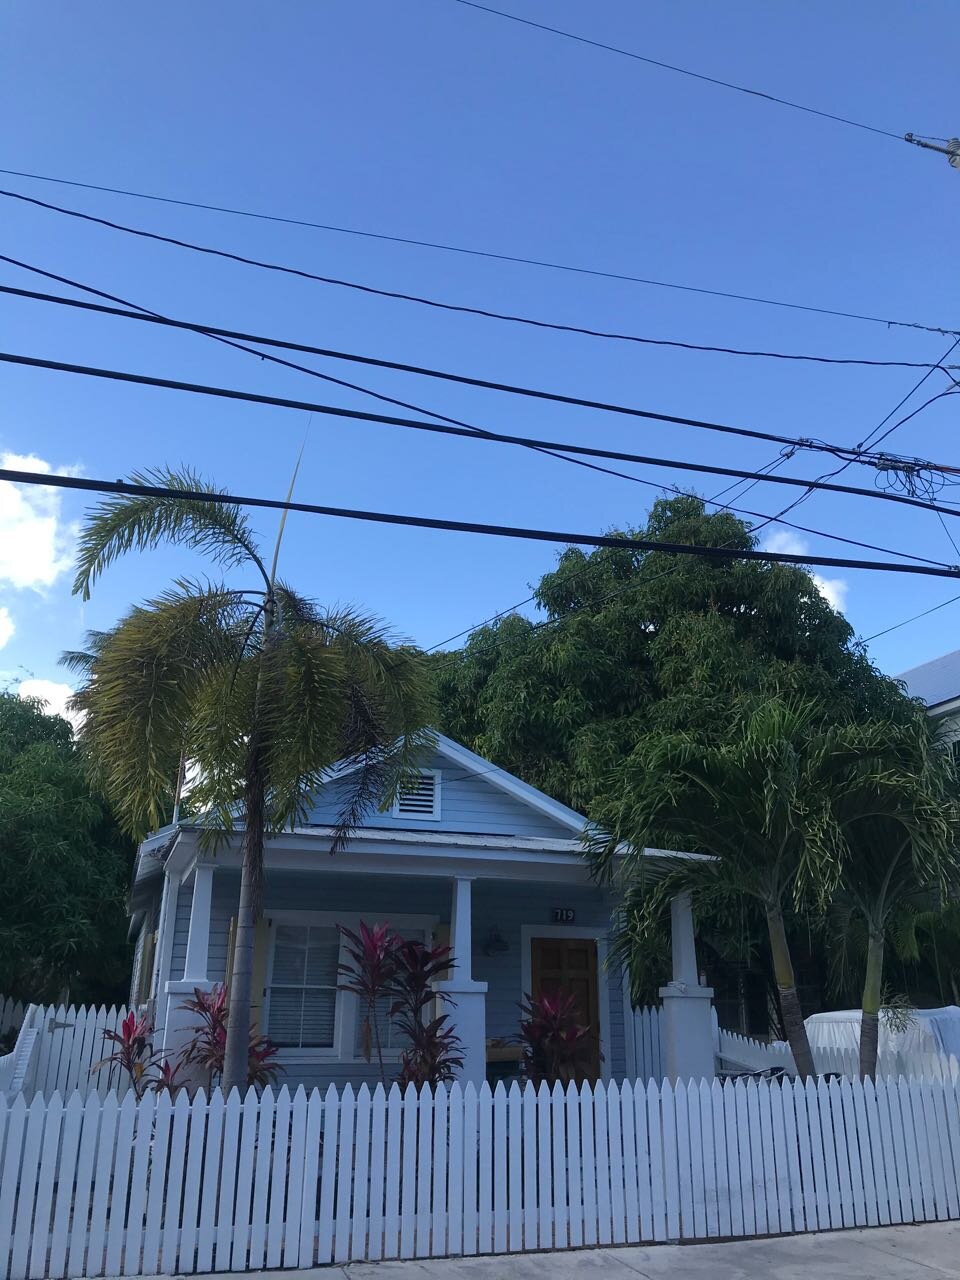 Key West House.jpg